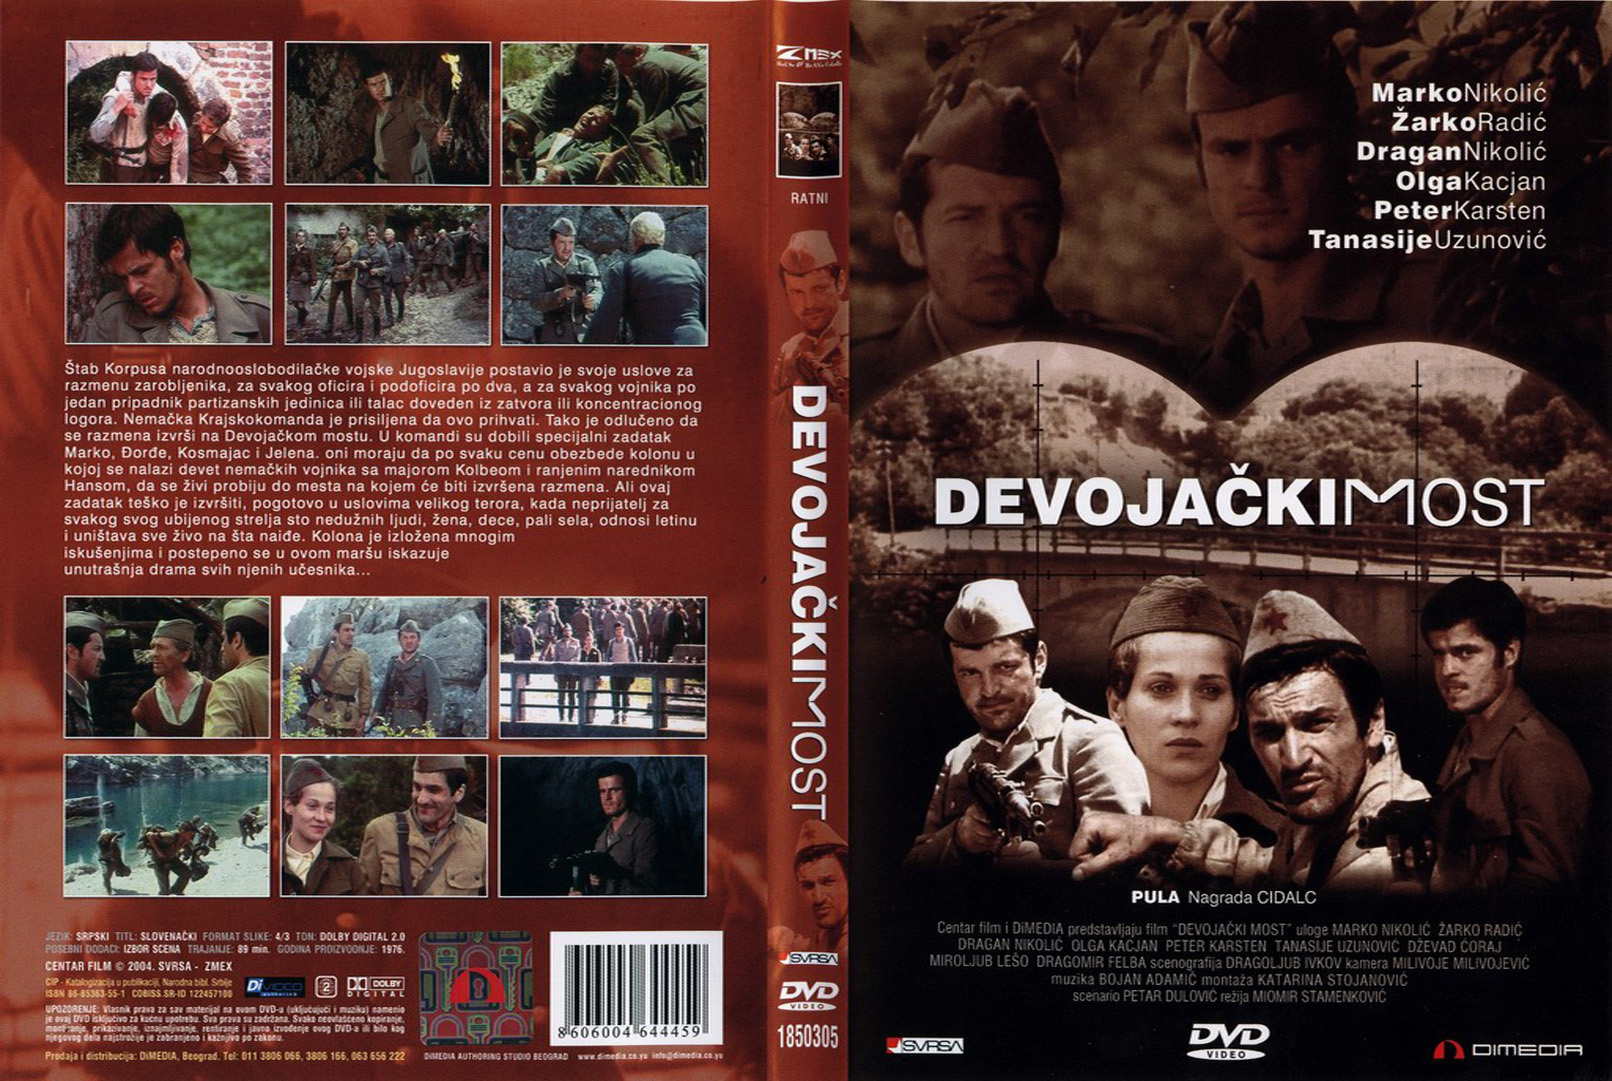 Click to view full size image -  DVD Cover - D - DVD - DJEVOJACKI MOST - DVD - DJEVOJACKI MOST.jpg